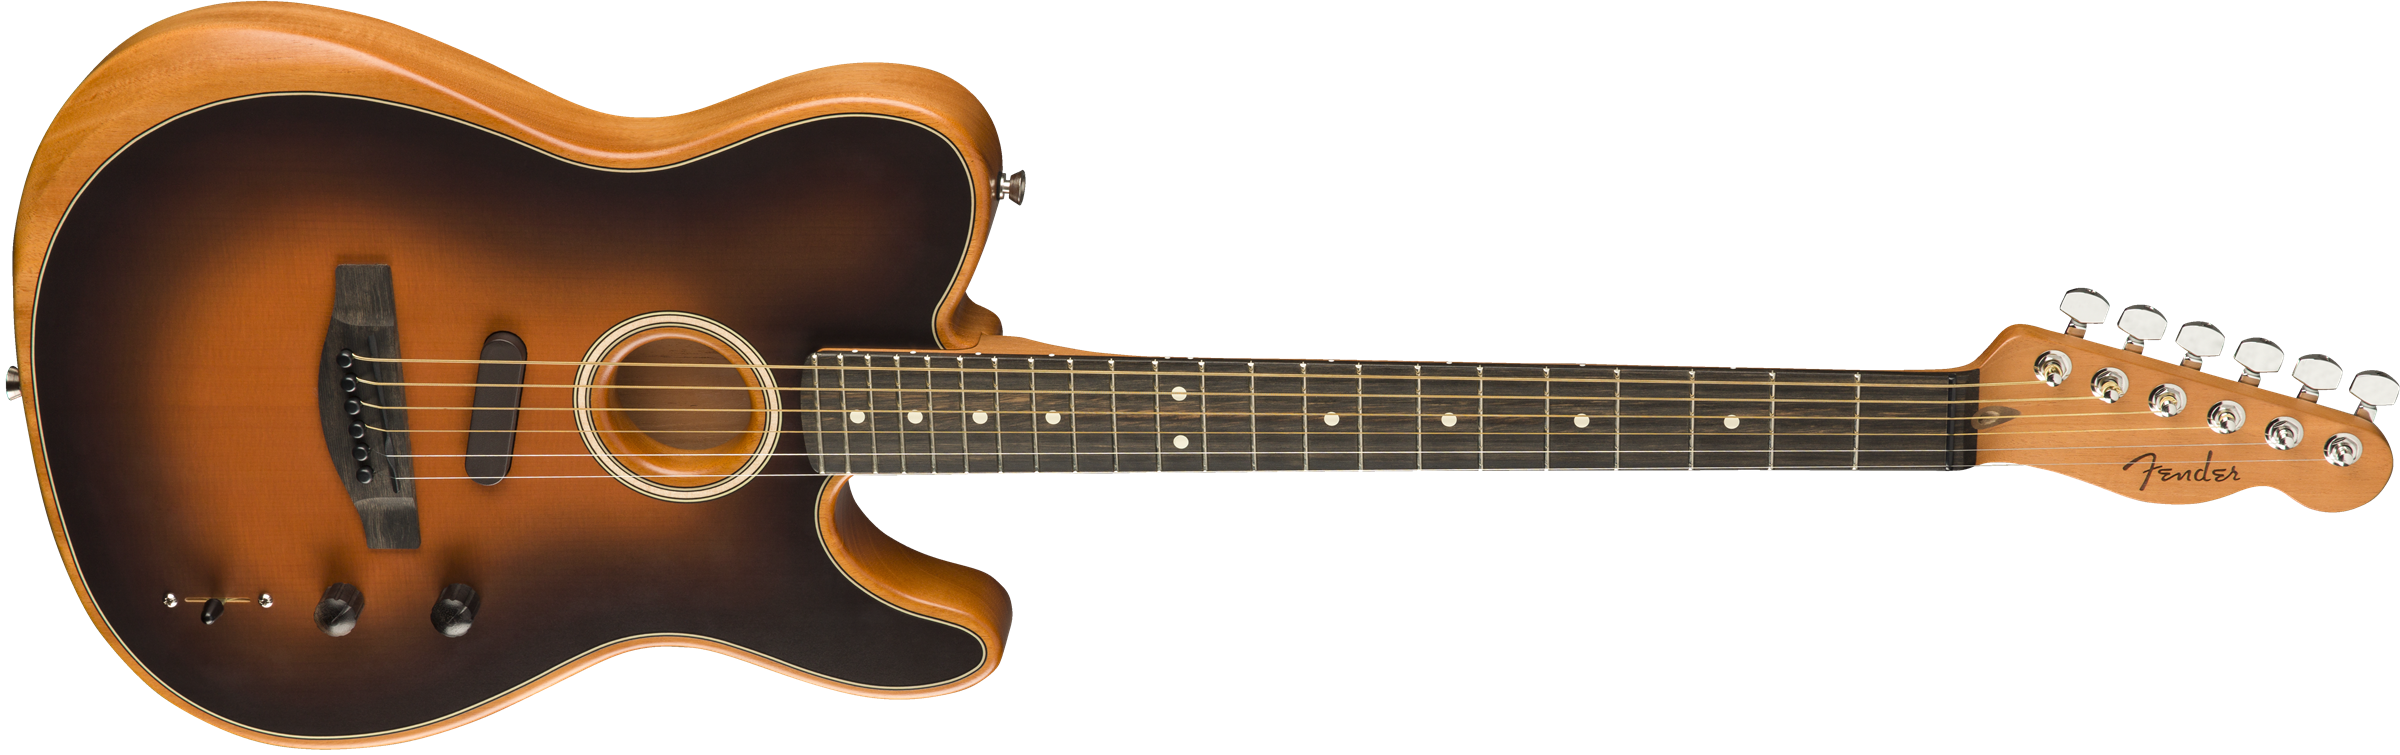 Fender Tele American Acoustasonic Usa Eb - Sunburst - Westerngitarre & electro - Variation 2